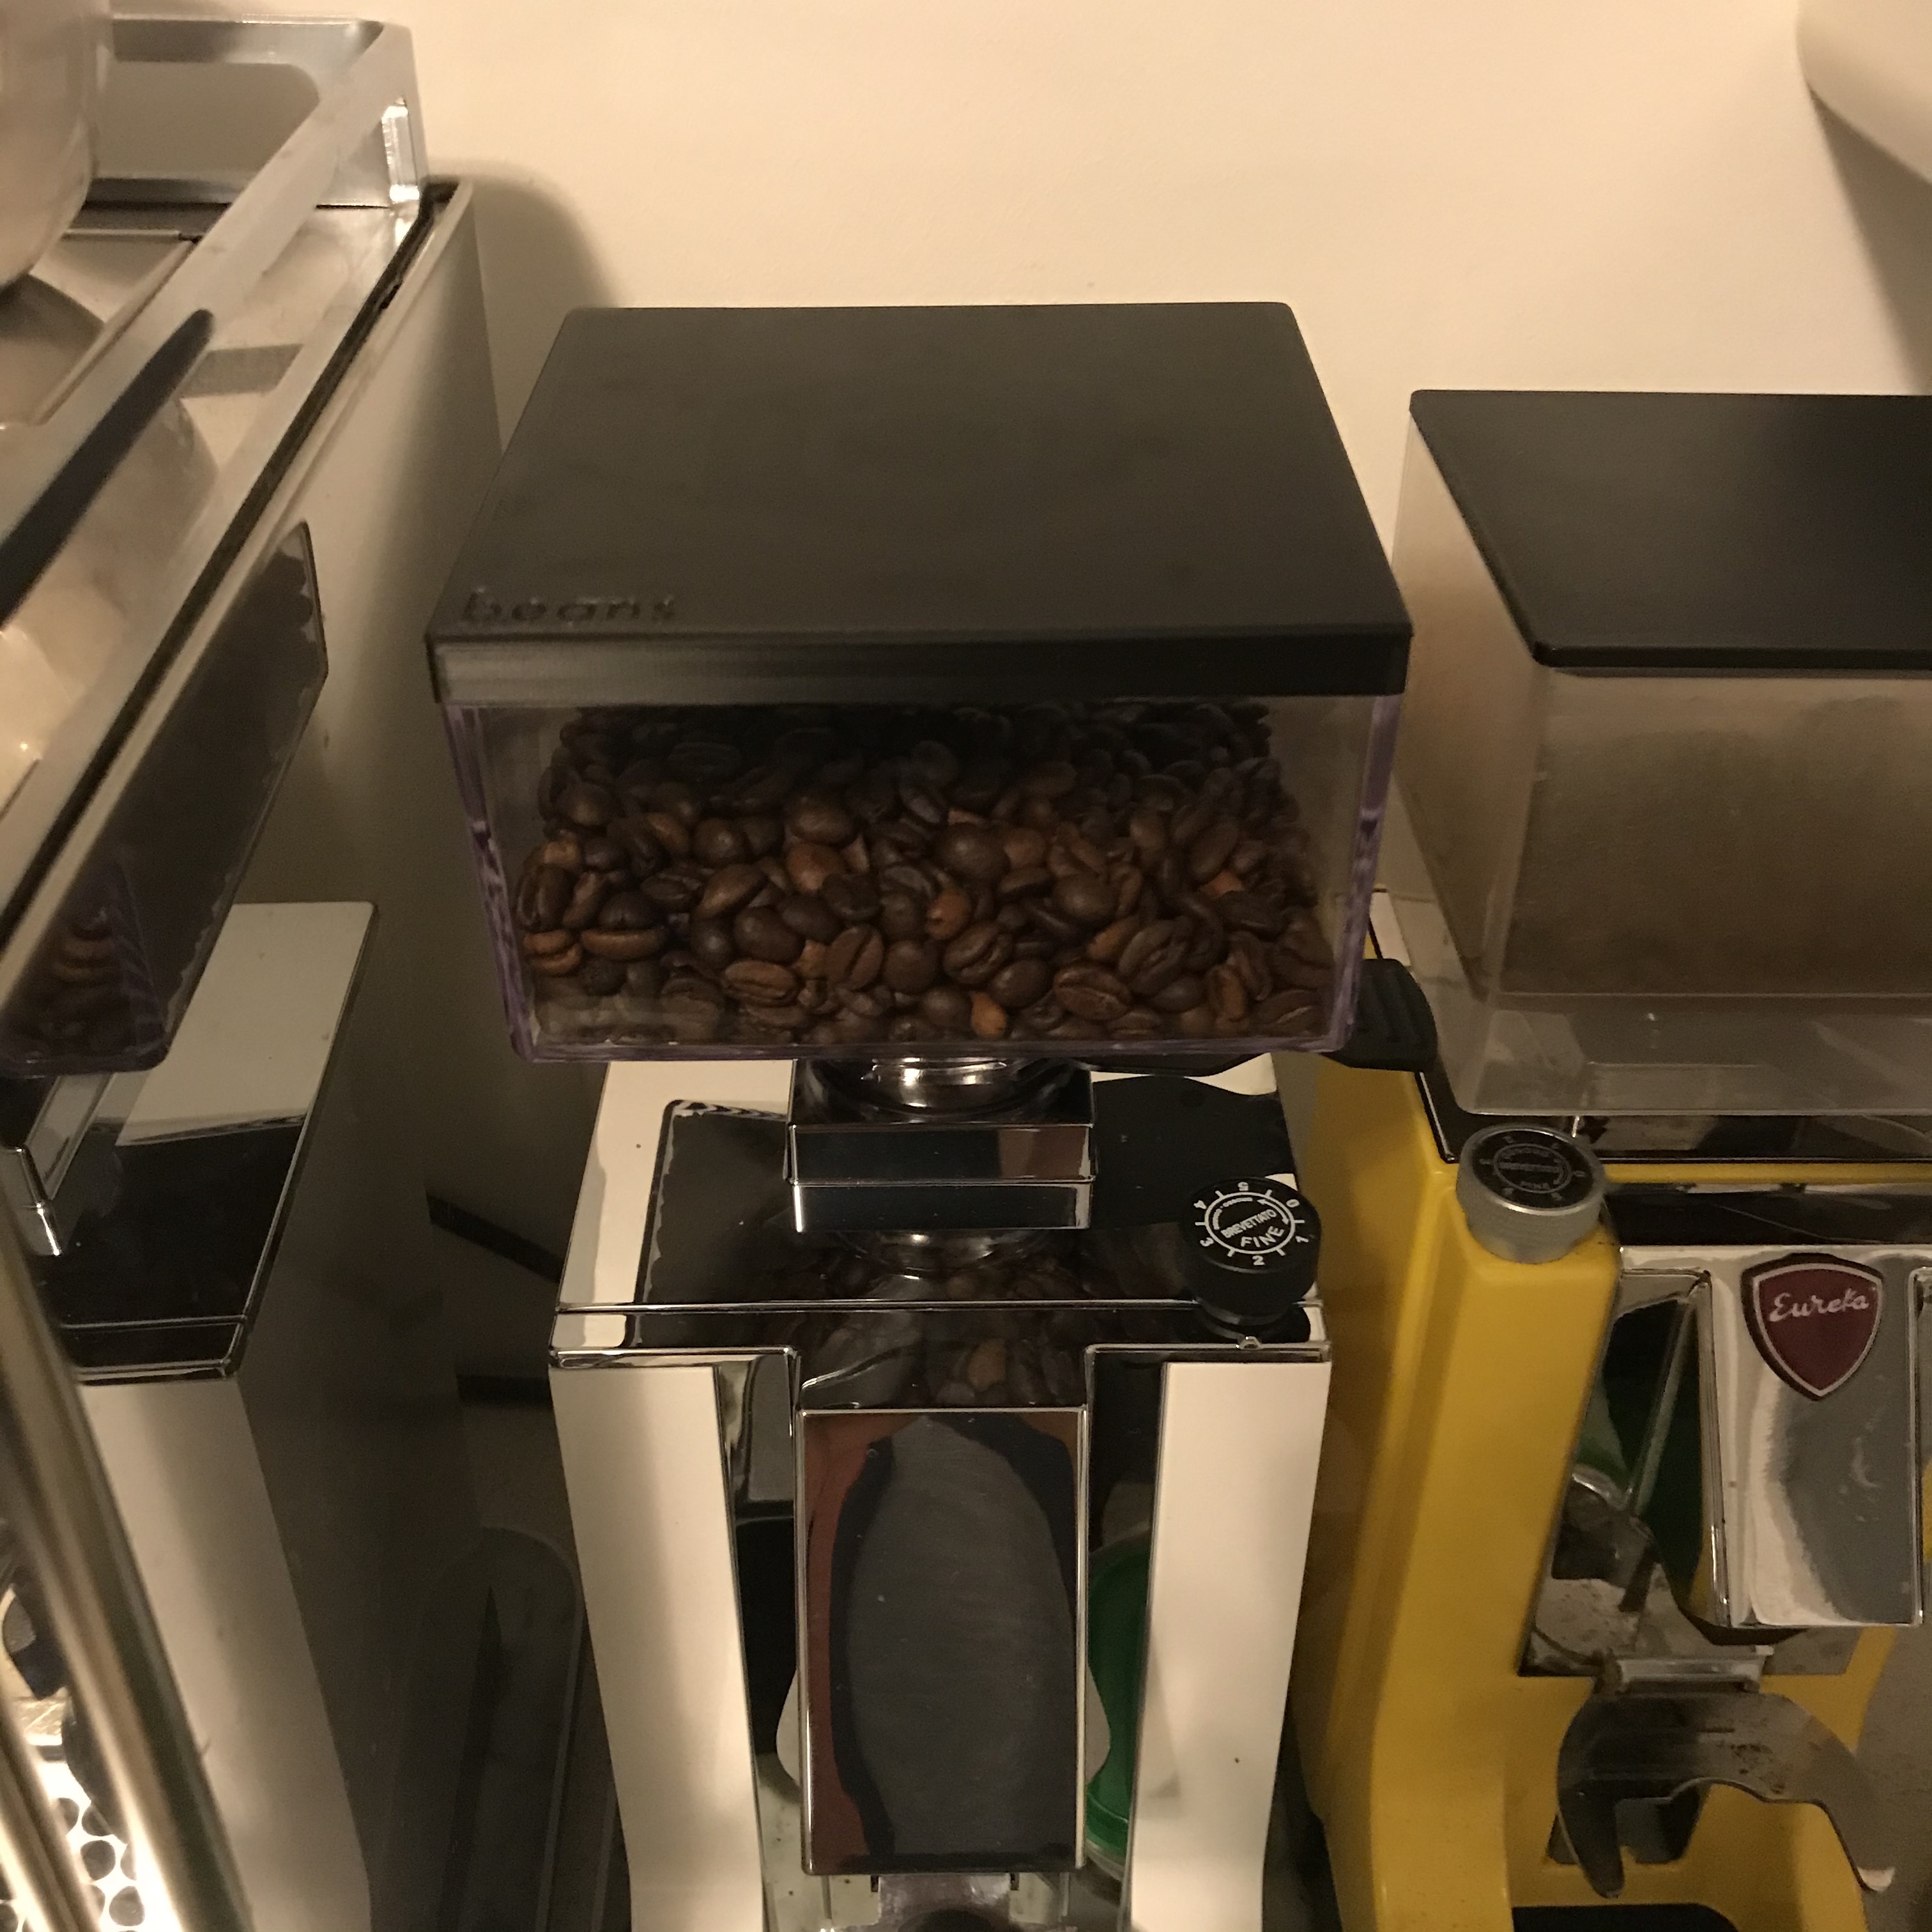 Eureka Coffee Grinder Lid